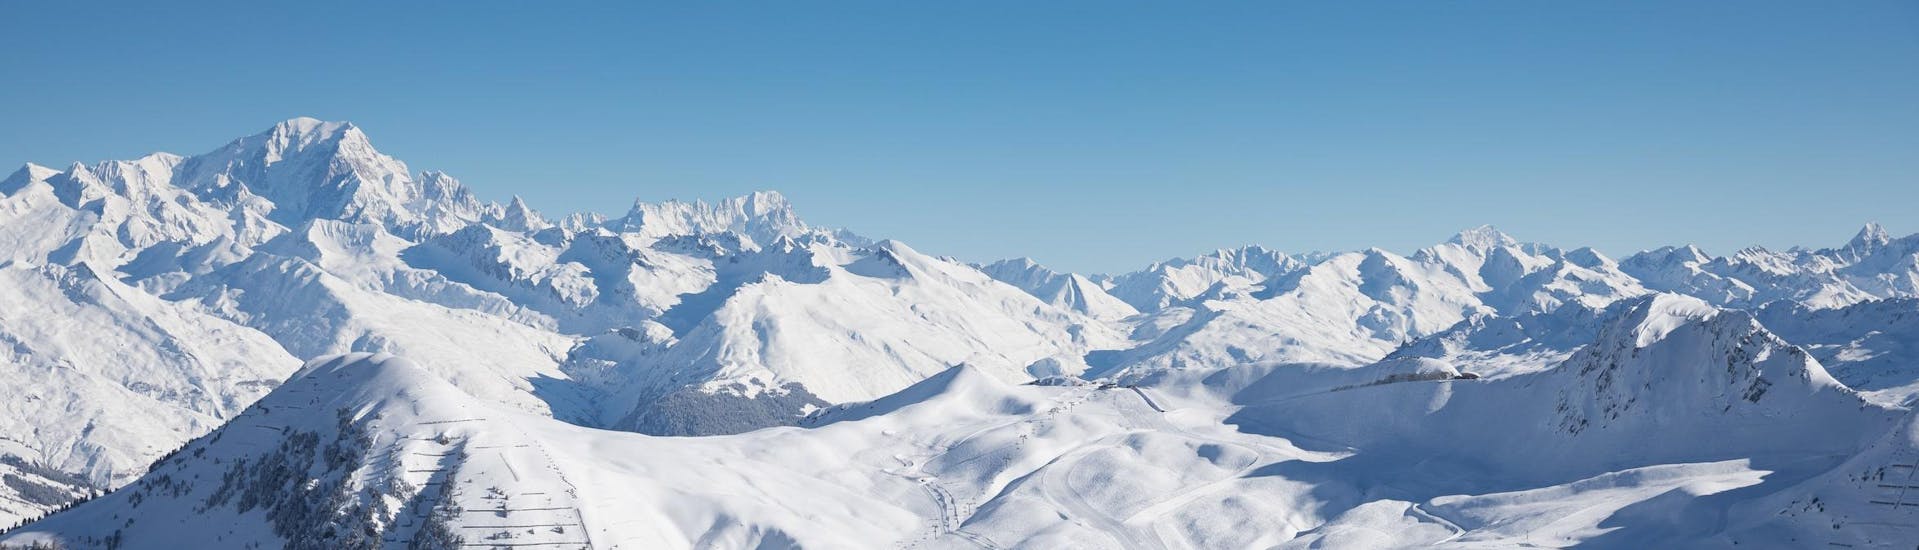 View of the snow capped mountains of La Plagne ski resorts where ski school provide ski lessons.